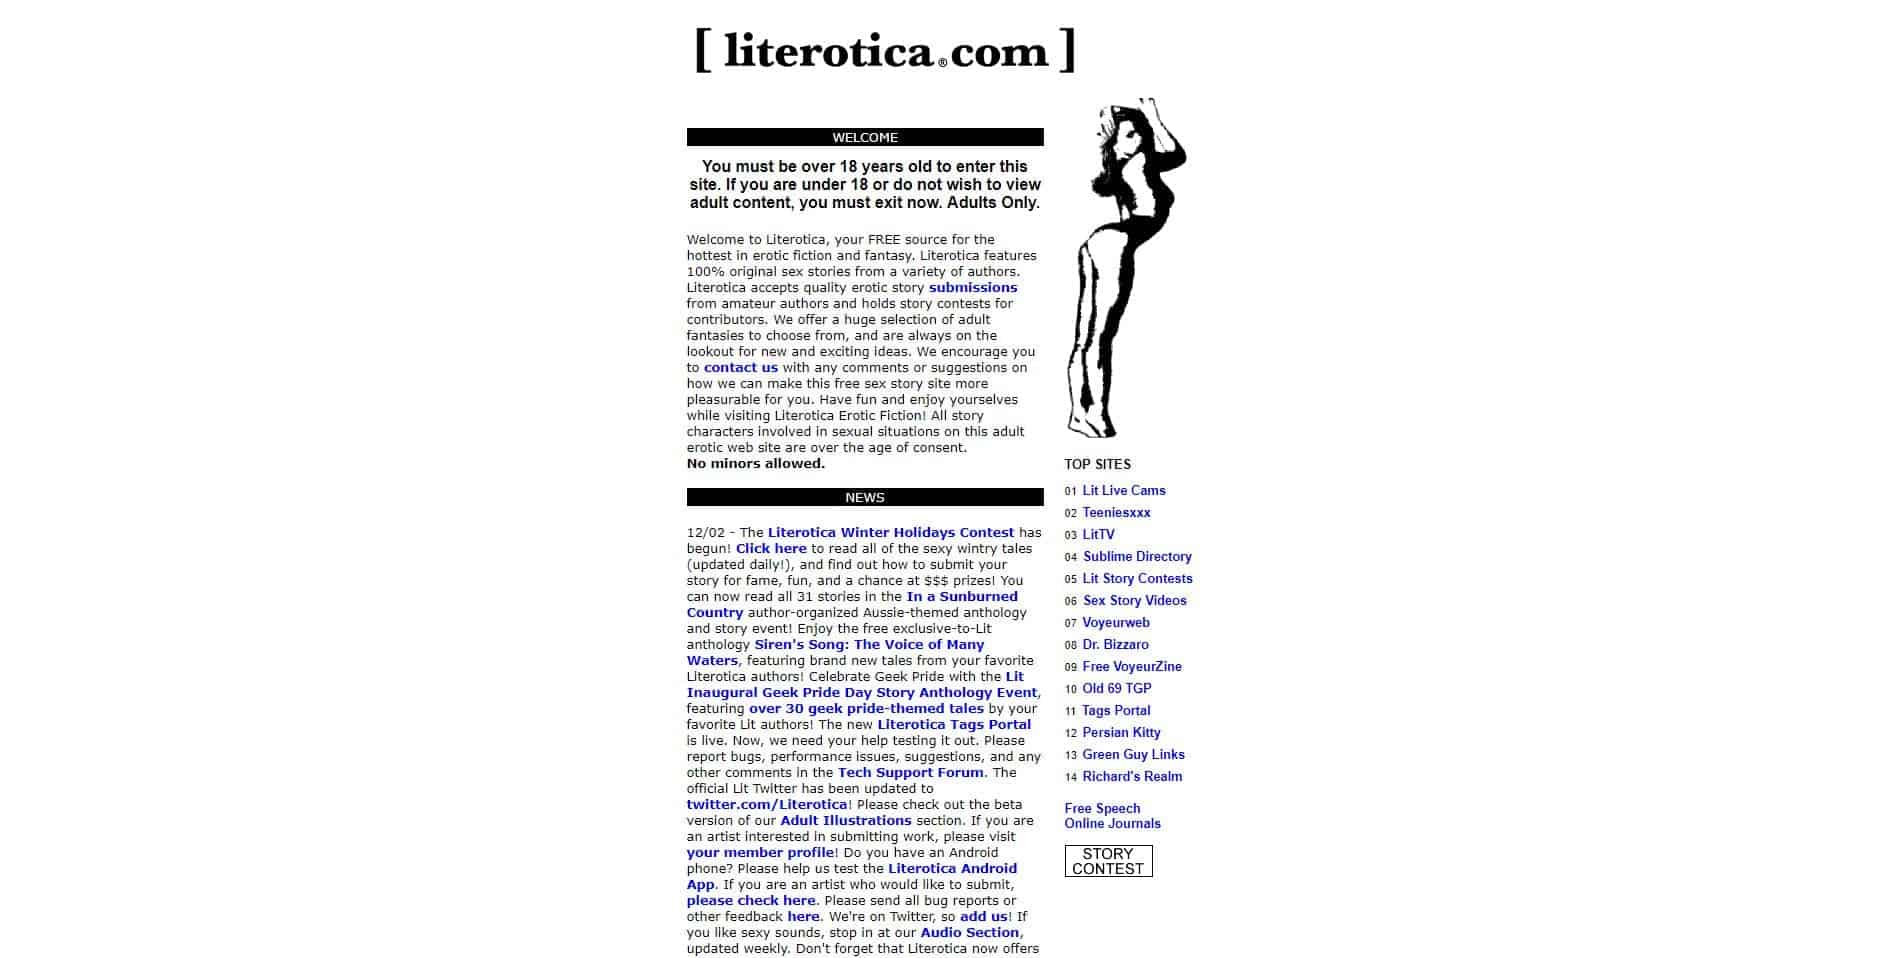 Literotica site